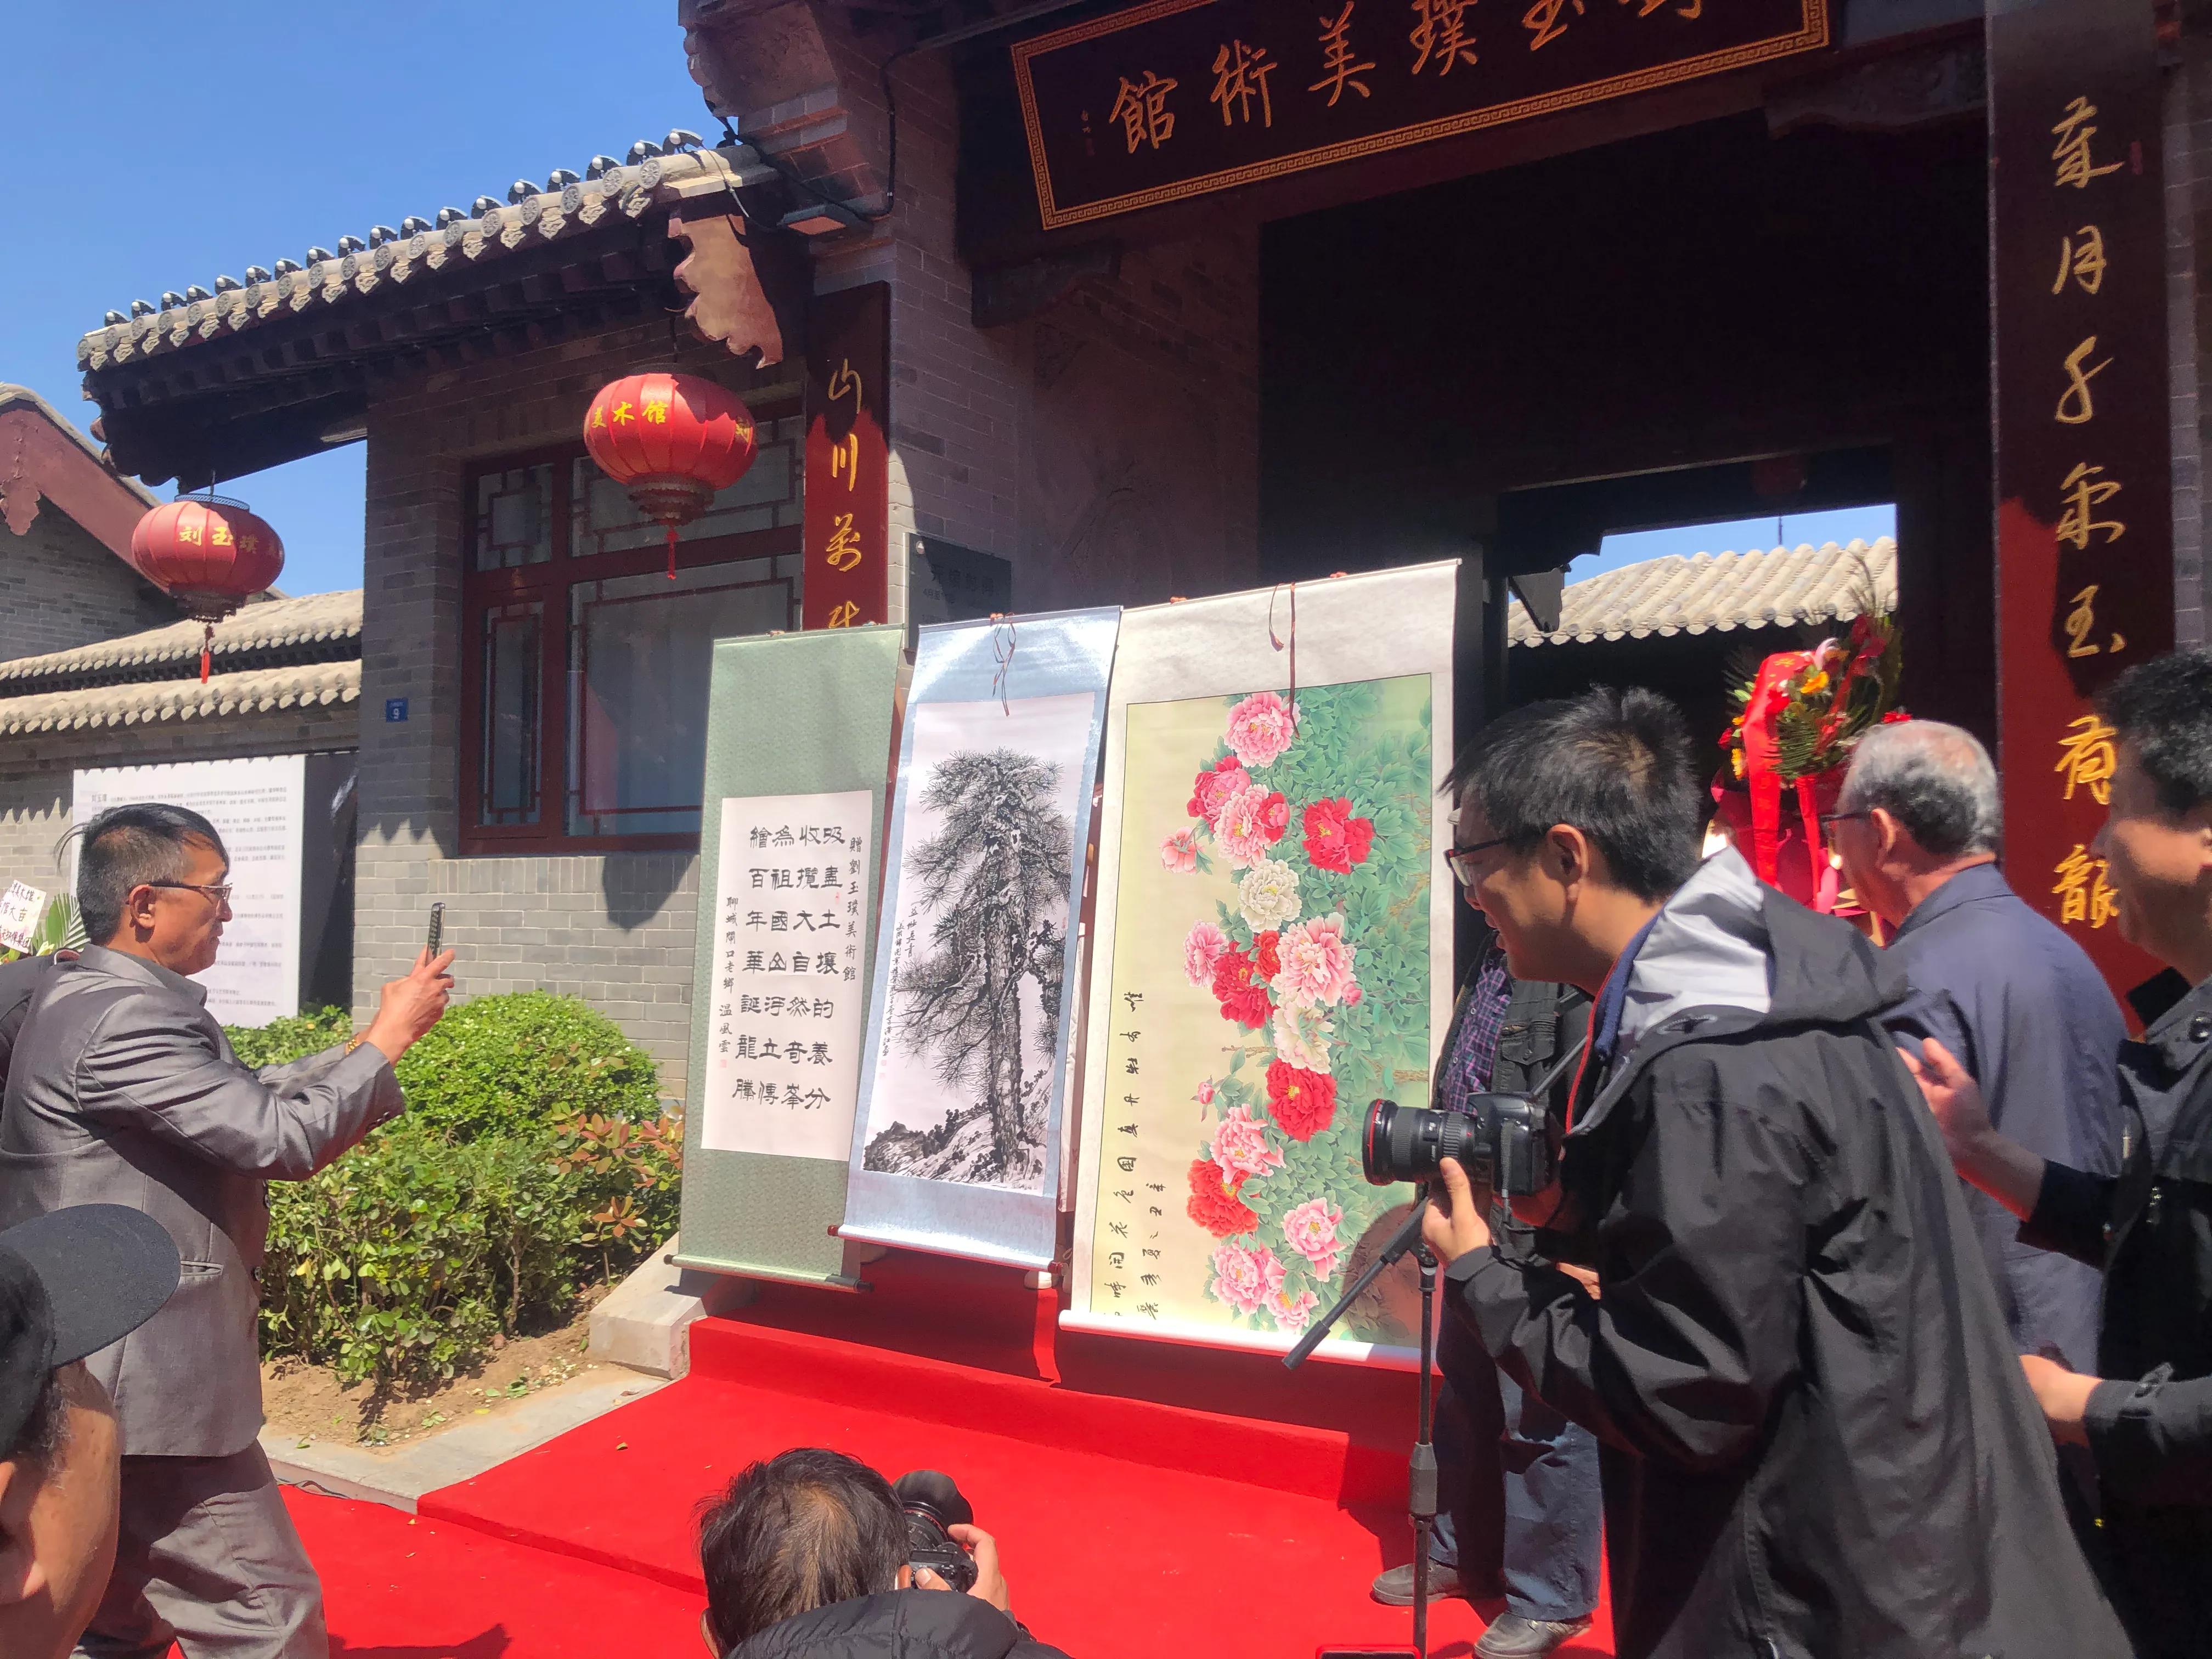 著名画家刘玉璞美术馆碧瓦朱檐落聊城， 展出其不同时期杰作近百幅